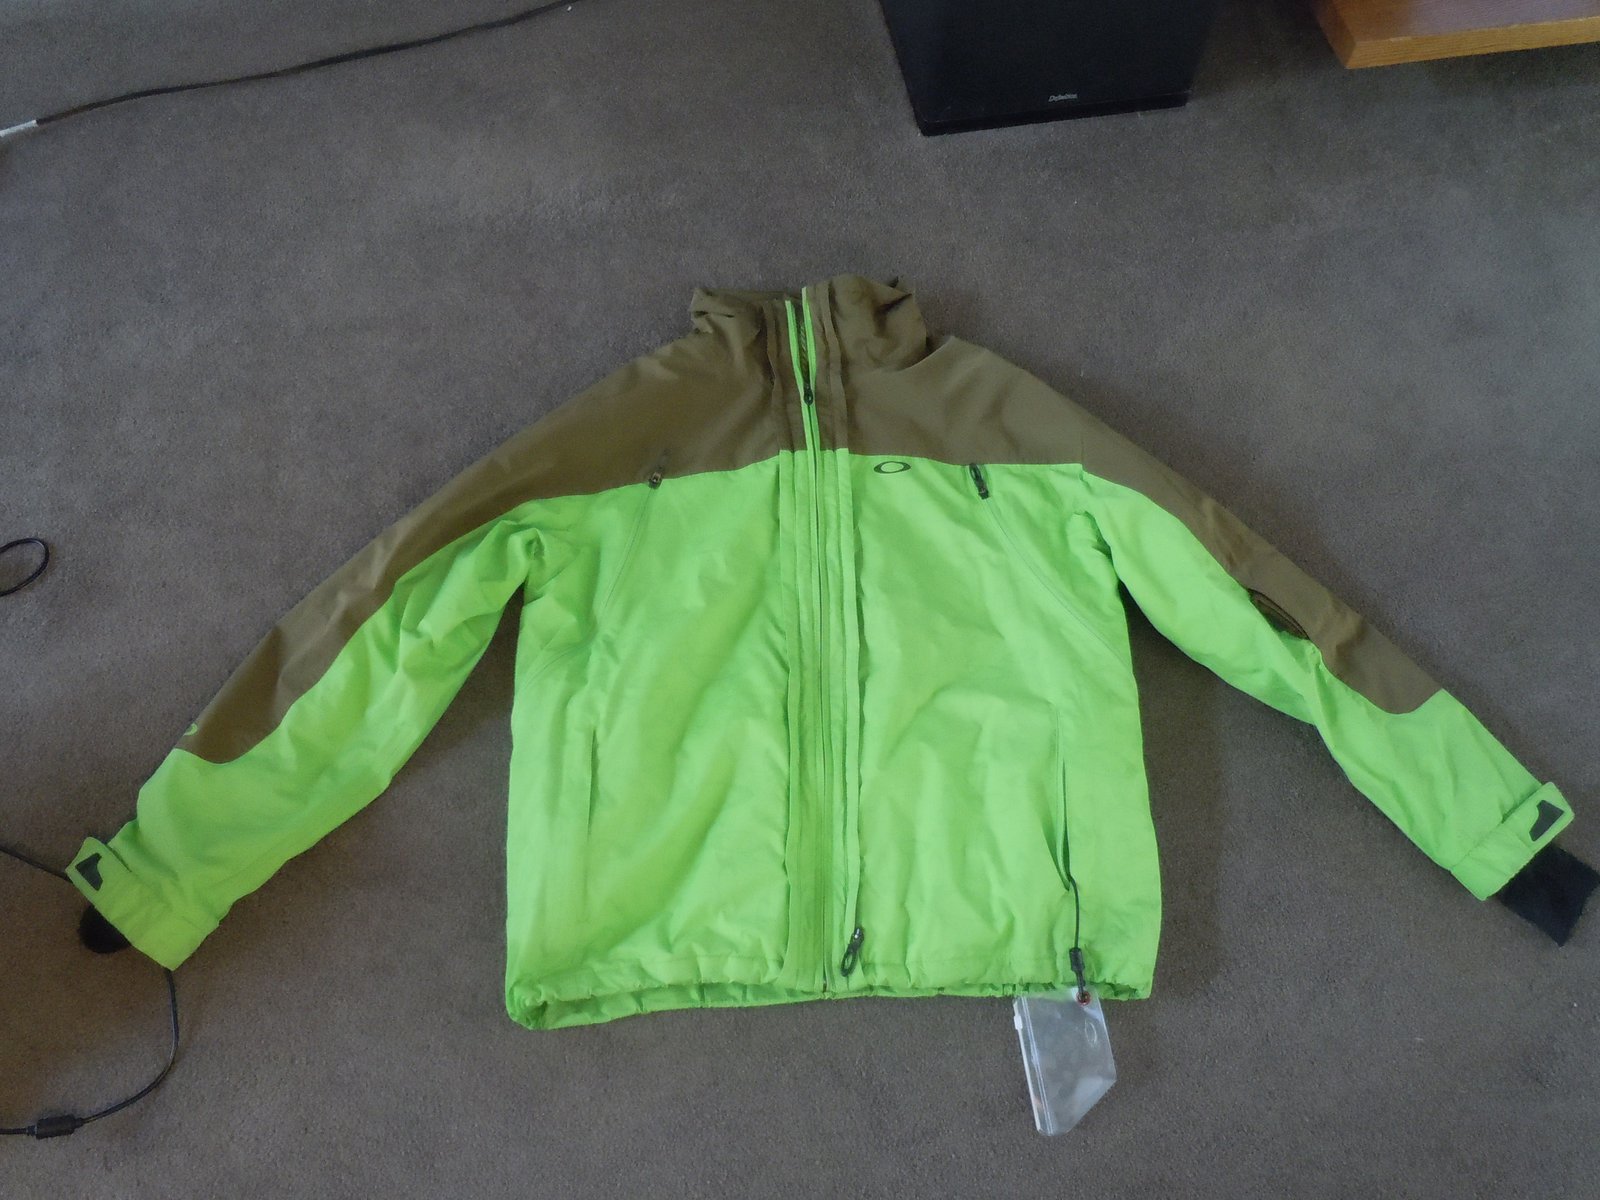 Oakley jacket for sale